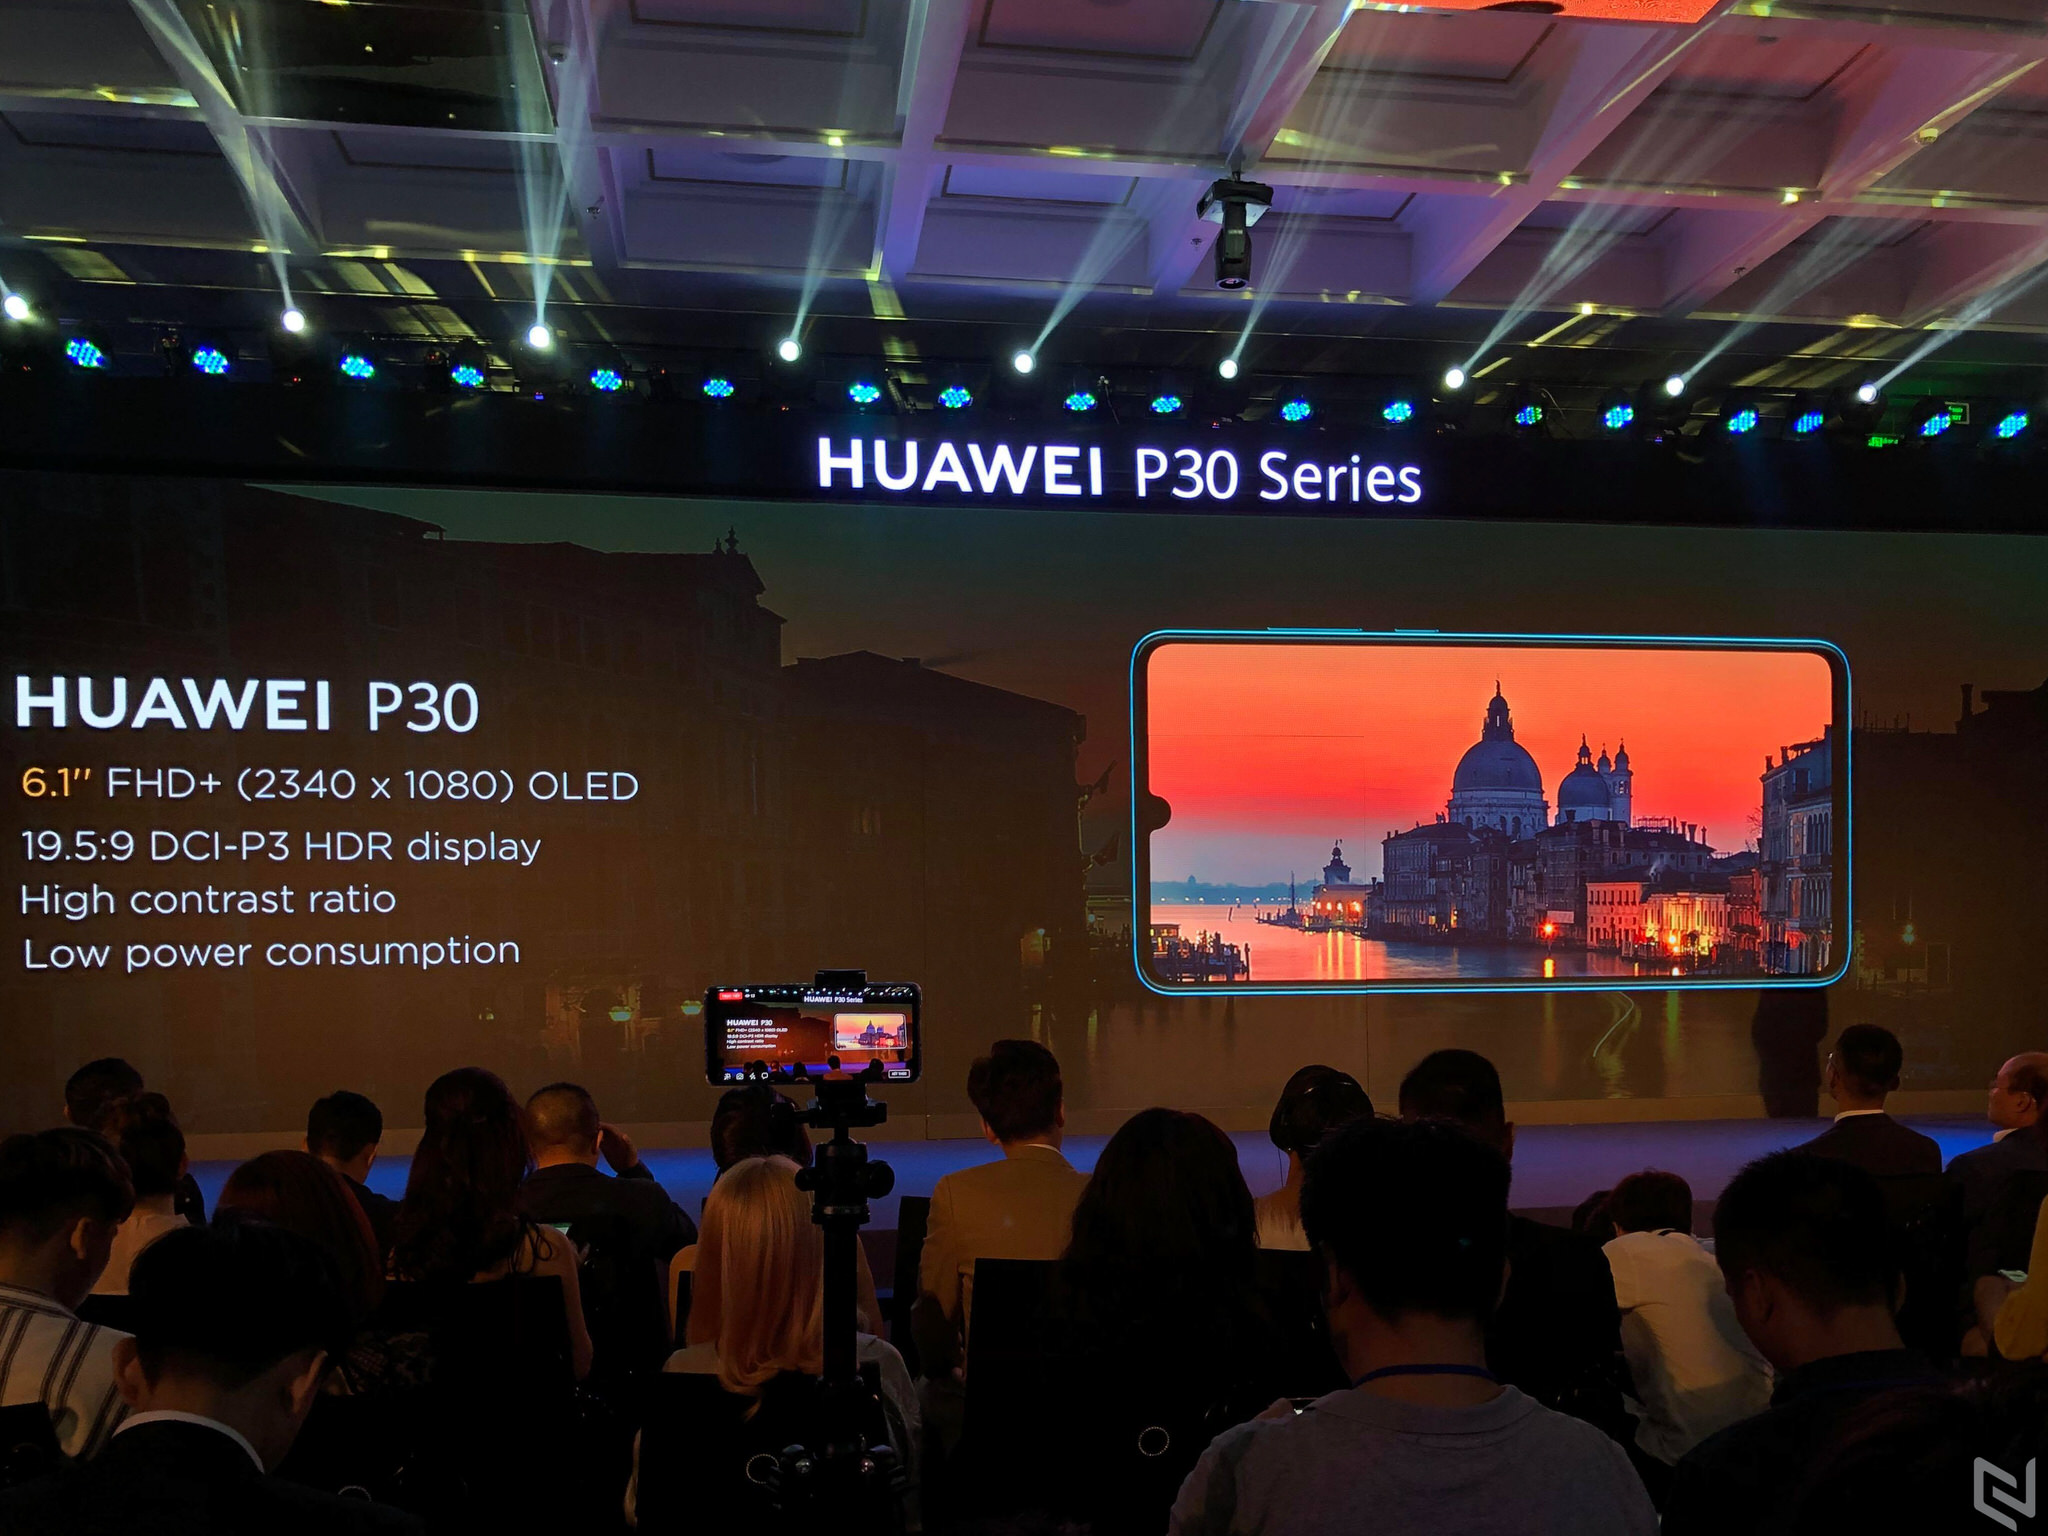 Ra mắt Huawei P30 và P30 Pro tại Việt Nam, giá từ 16,990,000 VND